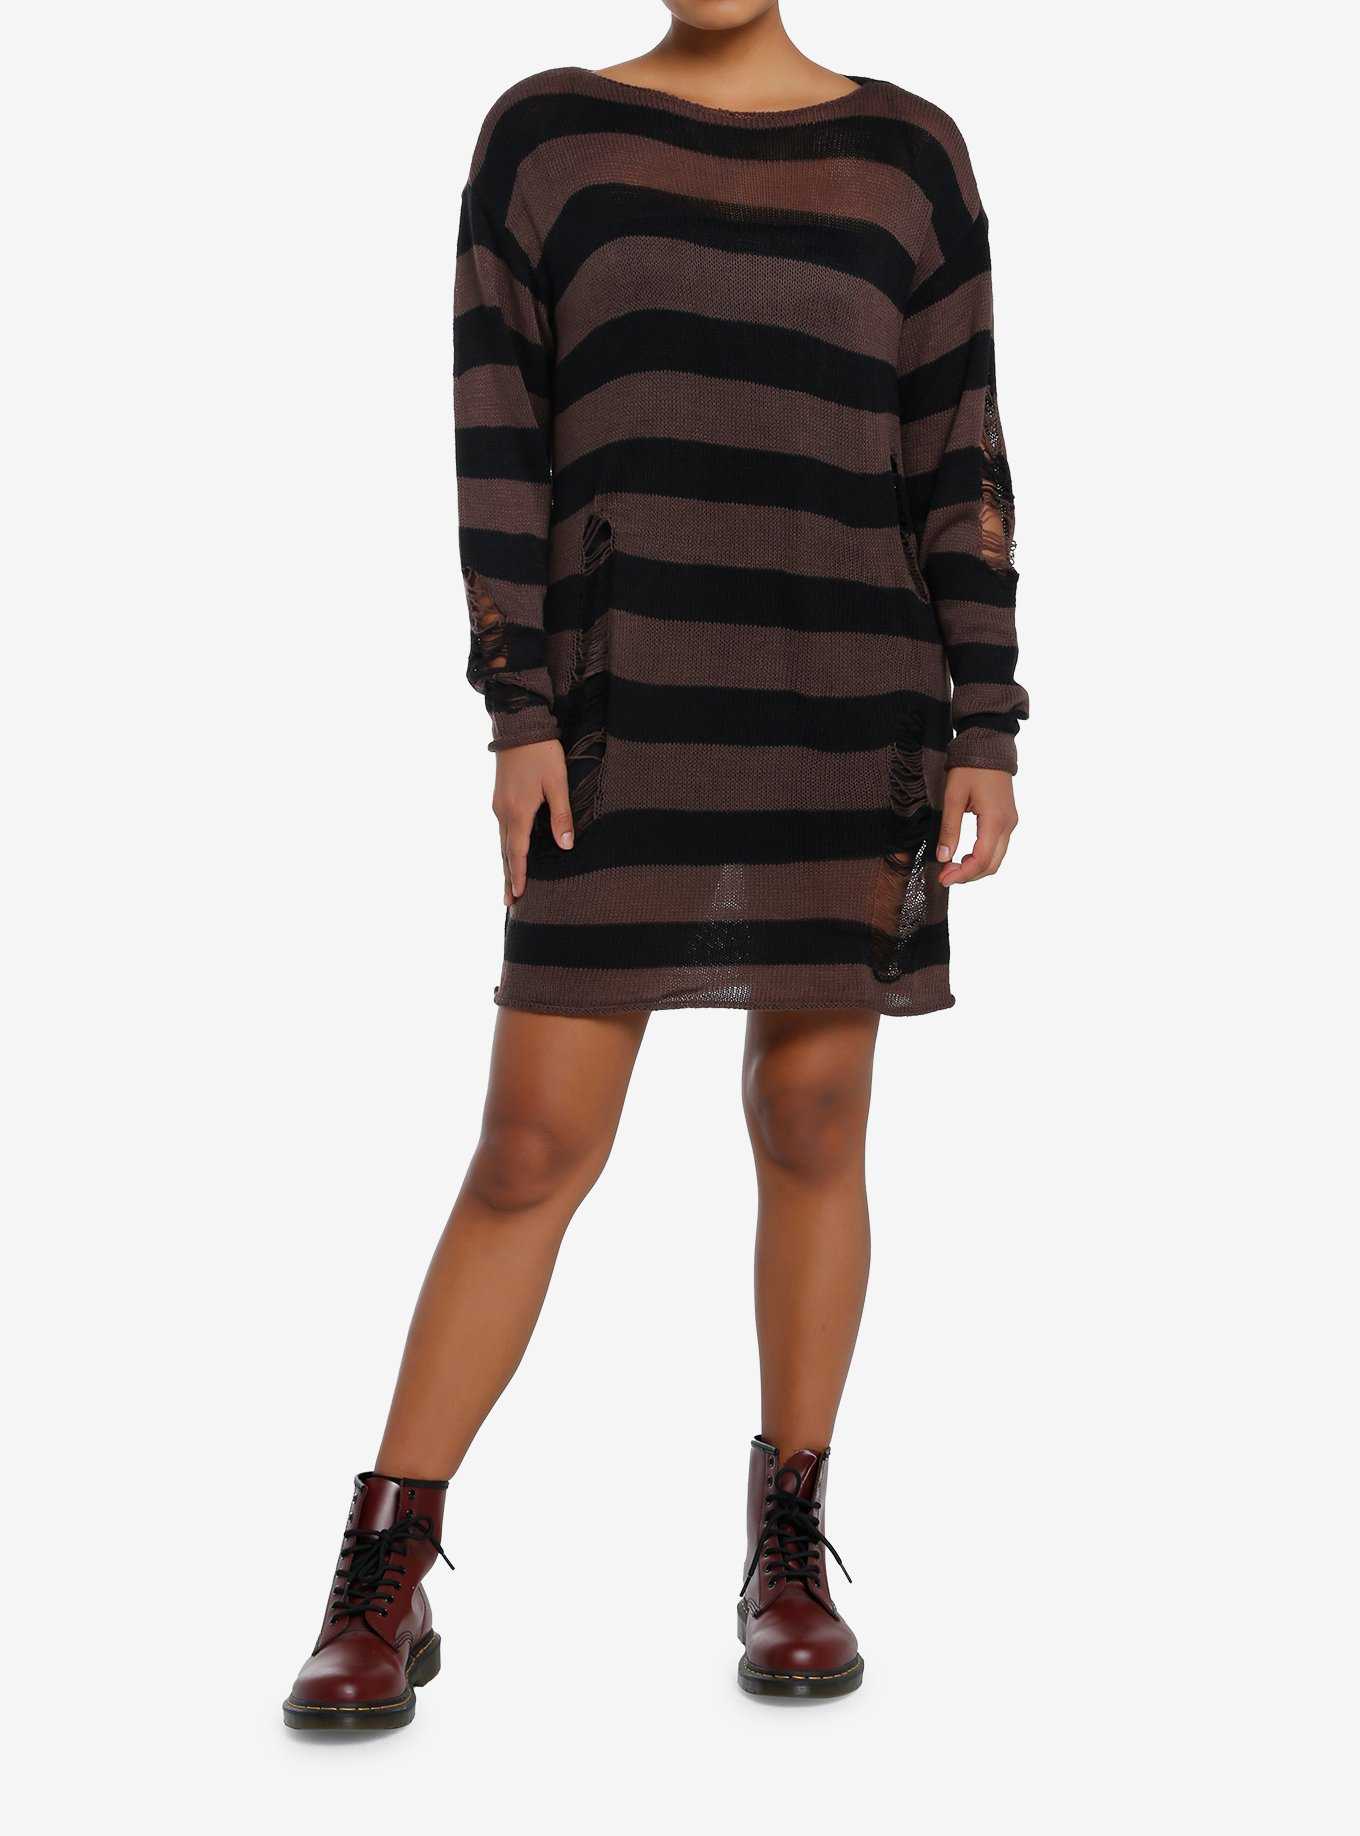 Social Collision Black & Brown Stripe Destructed Sweater Dress, , hi-res